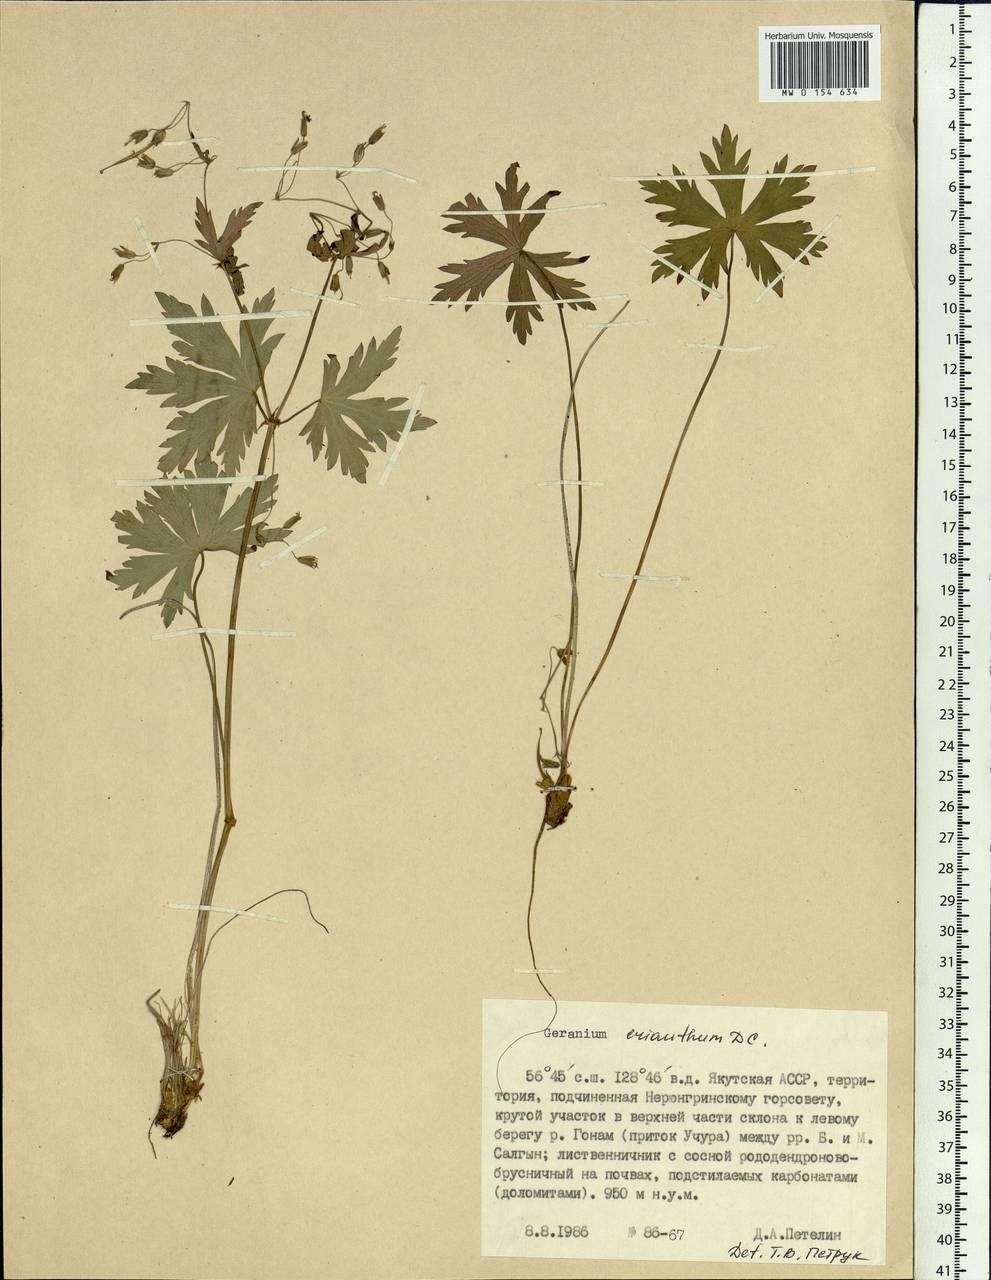 Geranium erianthum DC., Siberia, Yakutia (S5) (Russia)